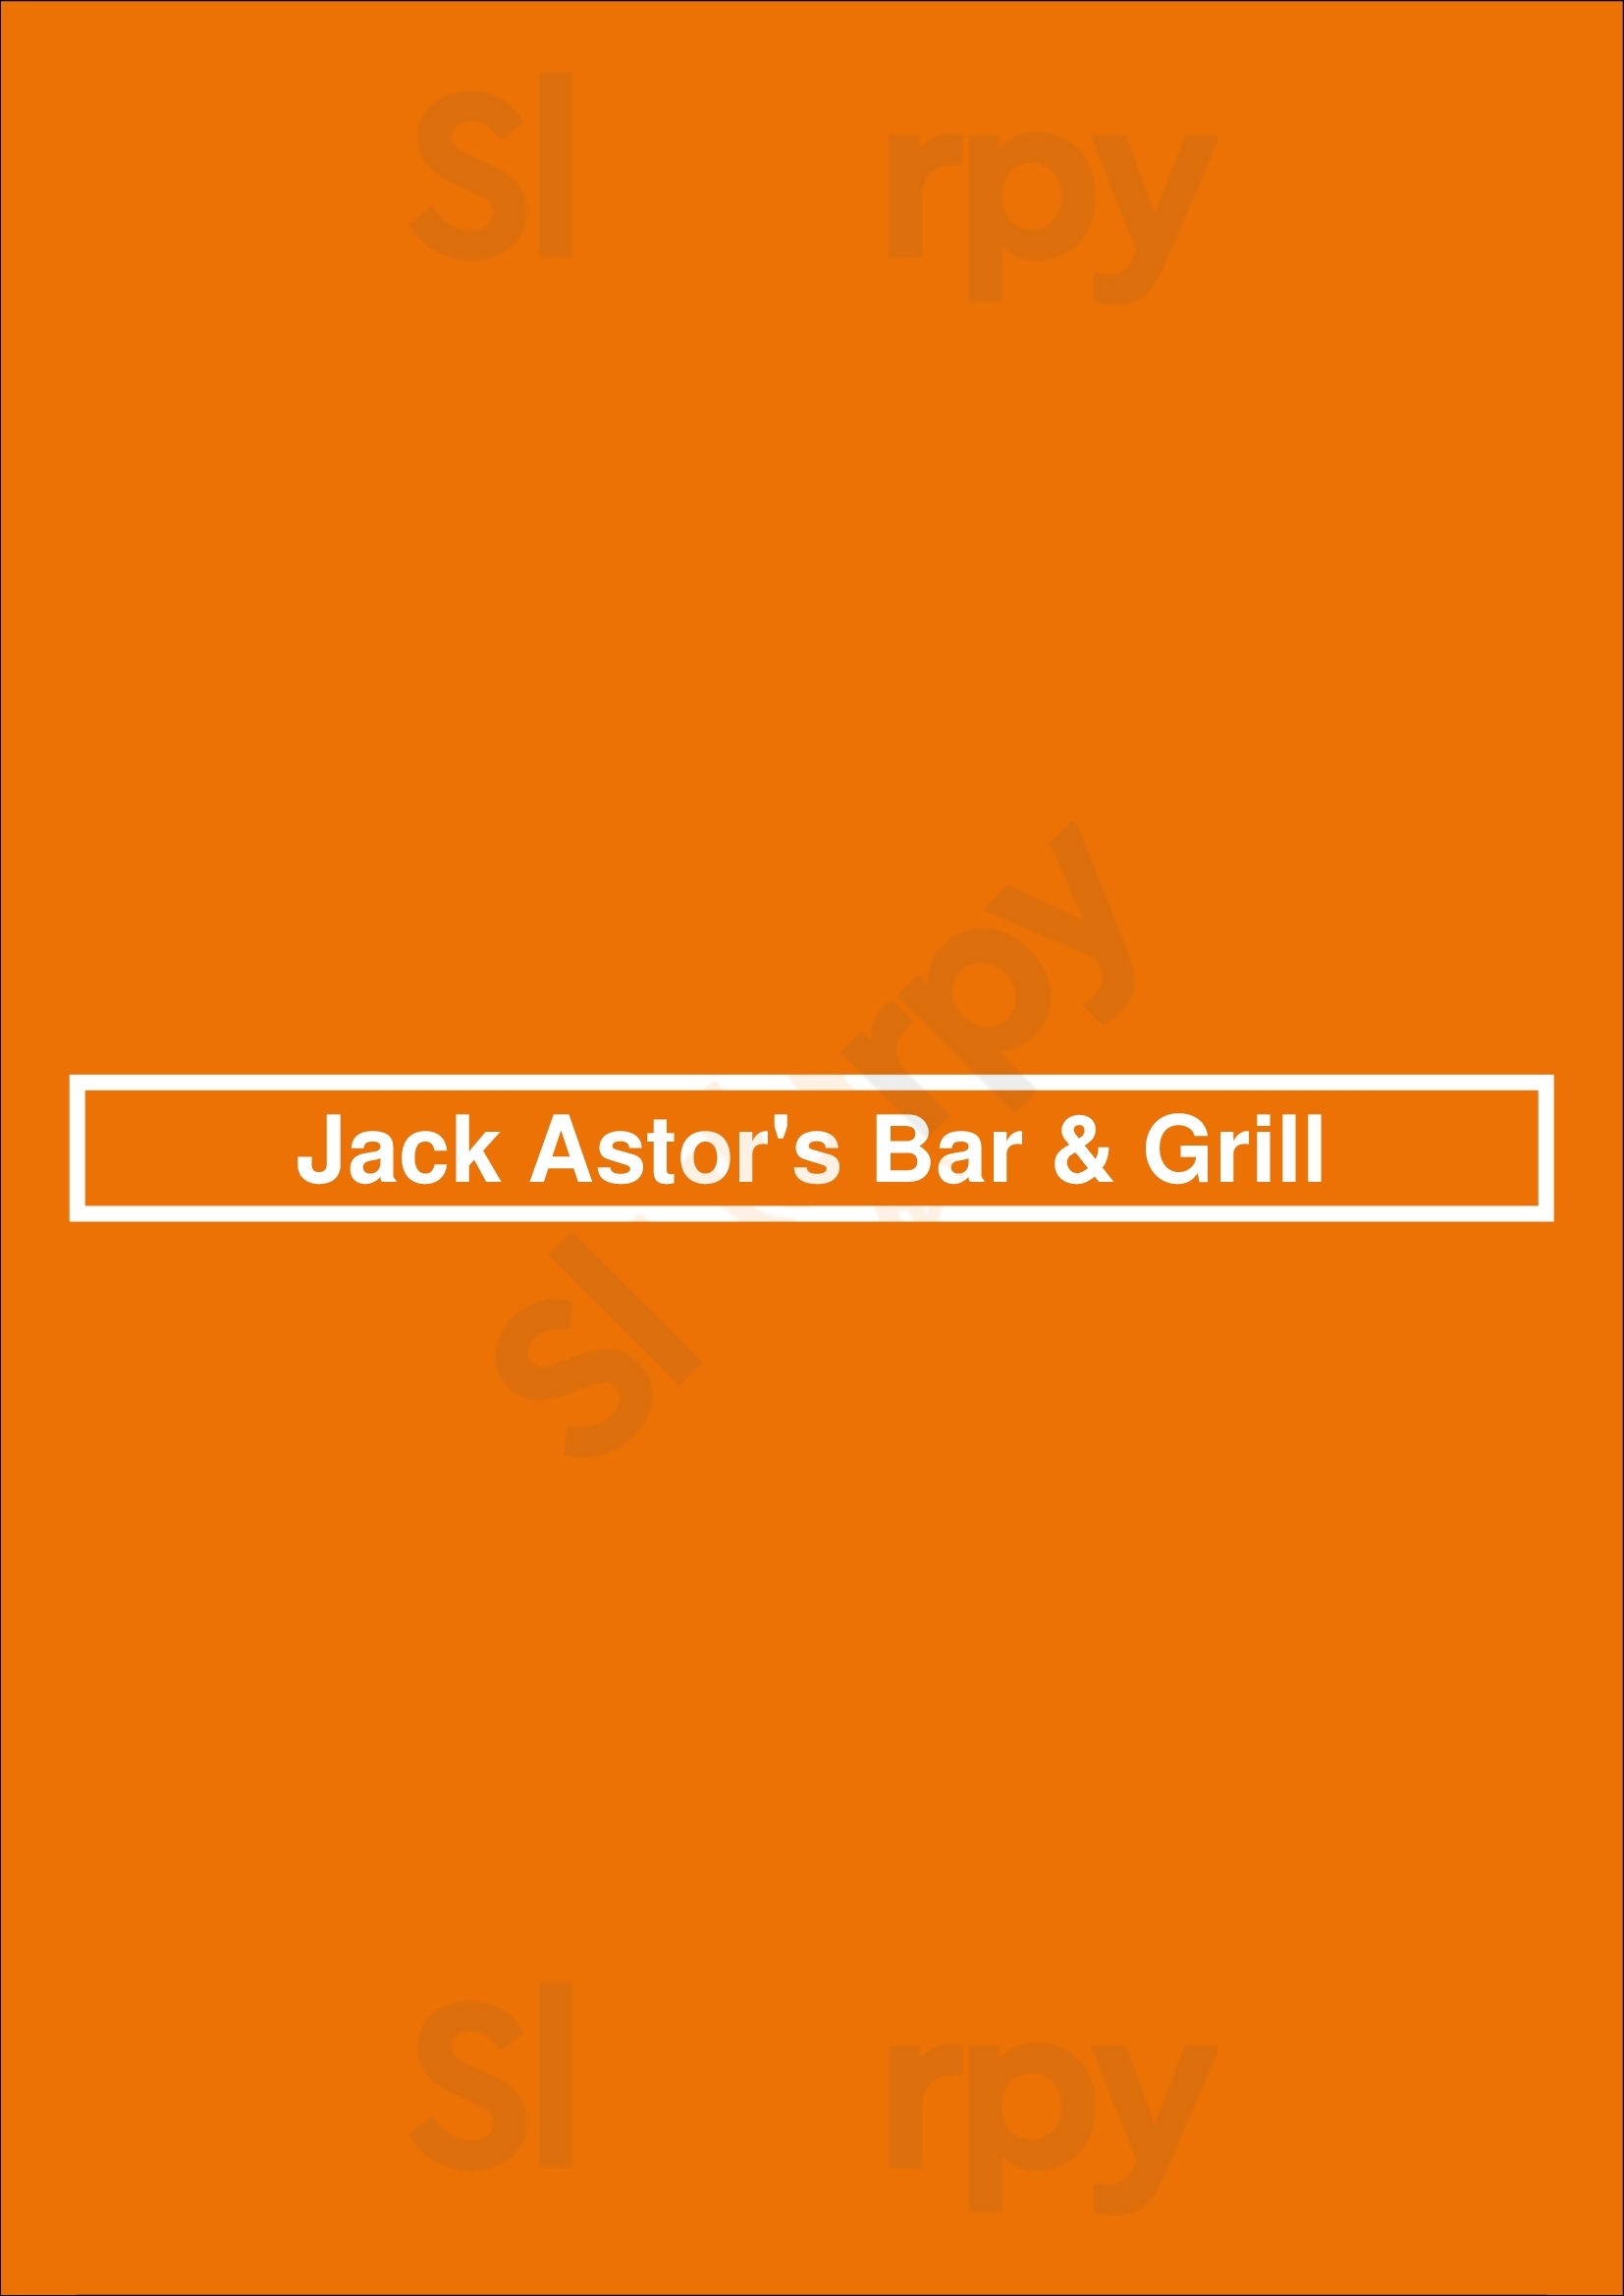 Jack Astor's Kitchener Menu - 1